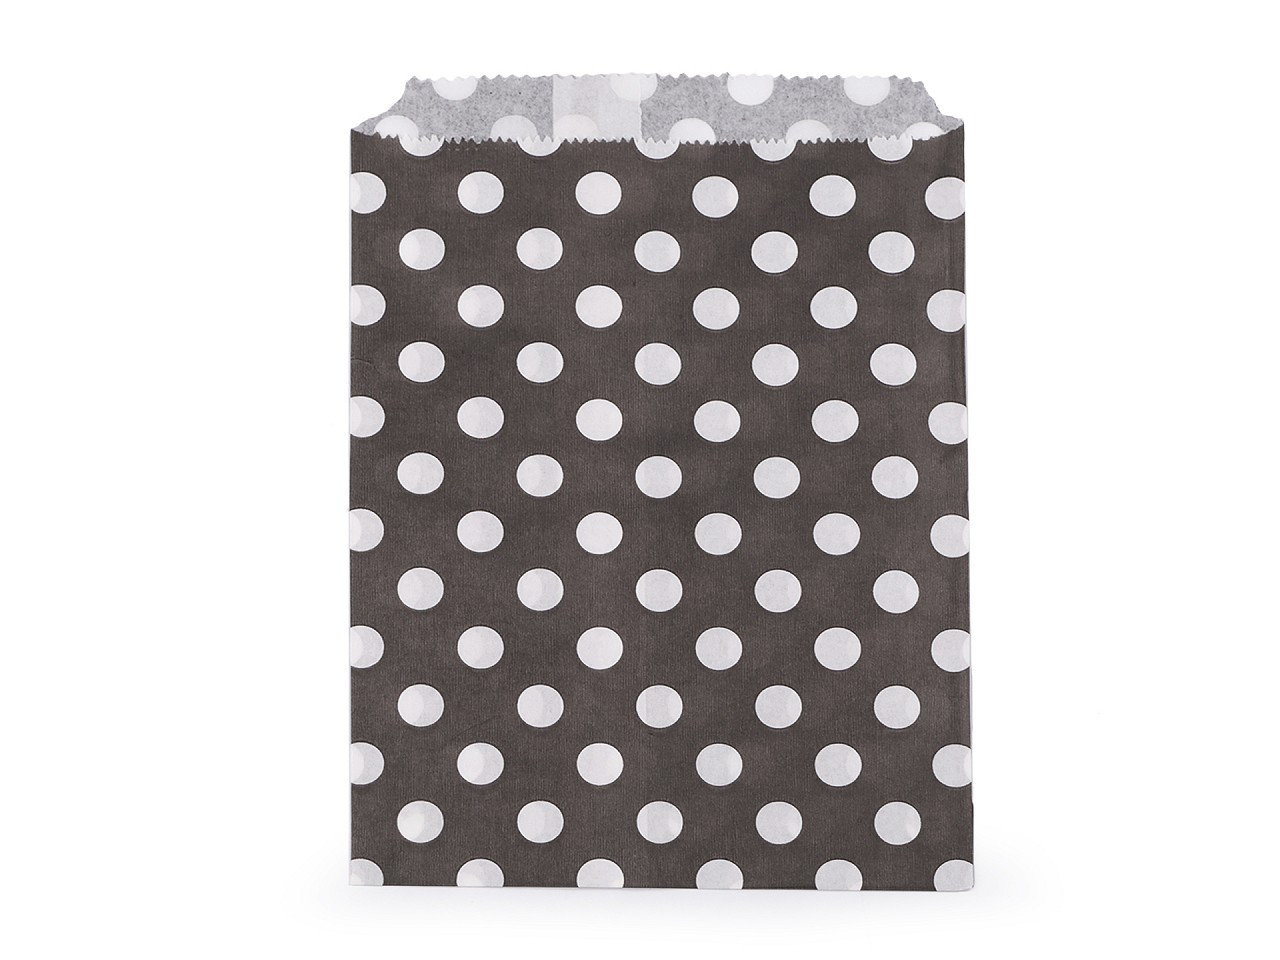 Papírový sáček chevron, puntík 13x17 cm, barva 3 šedá tmavá puntíky